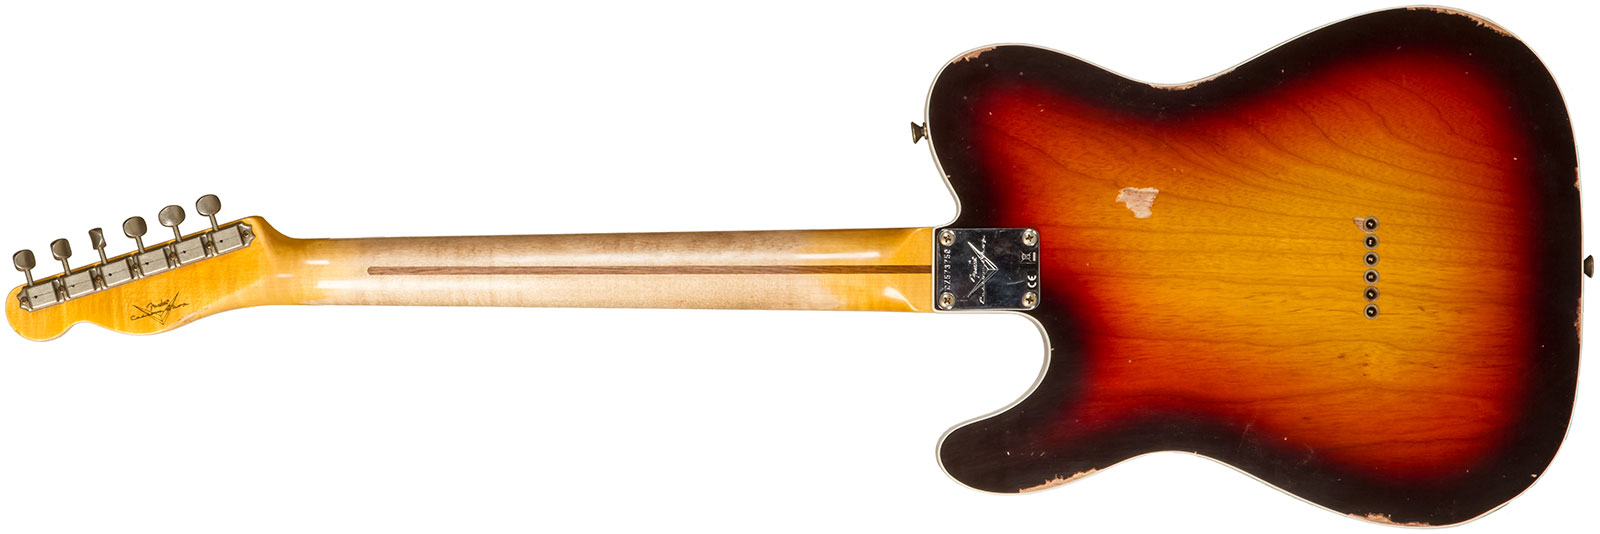 Fender Custom Shop Tele Custom 1959 2s Ht Mn #cz573750 - Relic Chocolate 3-color Sunburst - Guitare Électrique Forme Tel - Variation 1